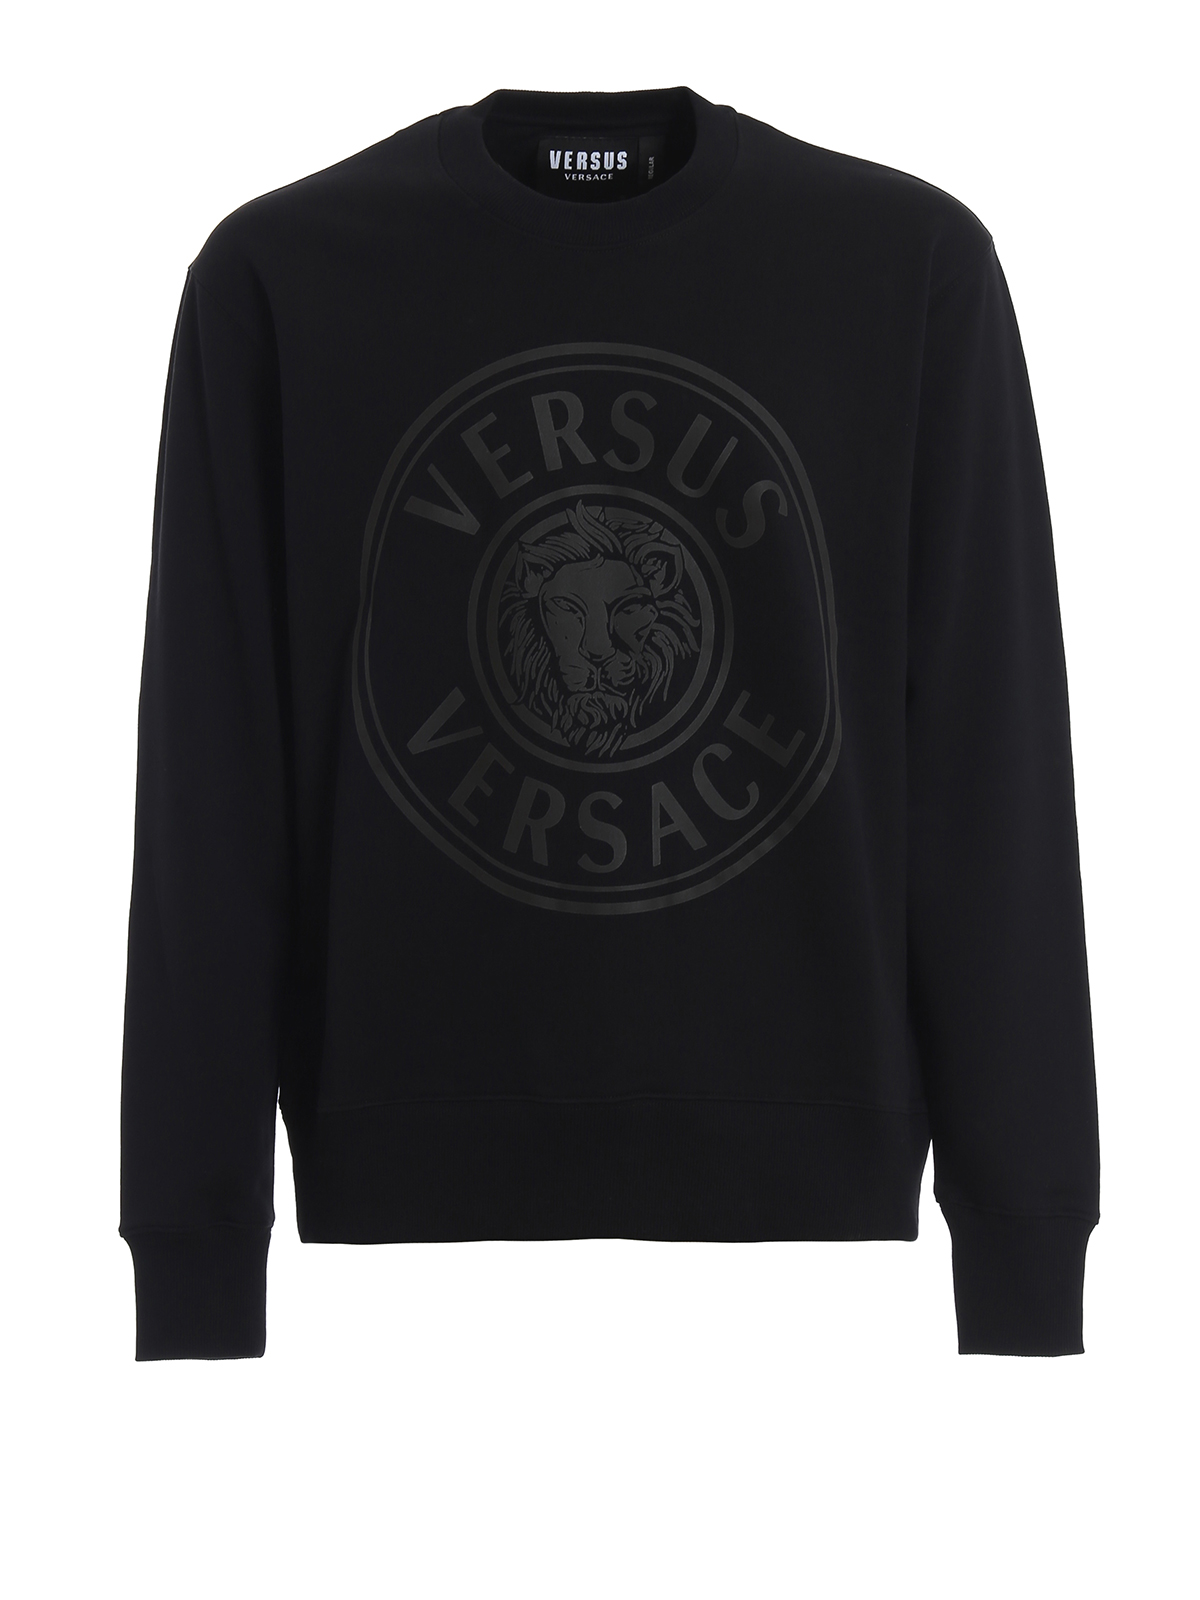 versace black sweatshirt